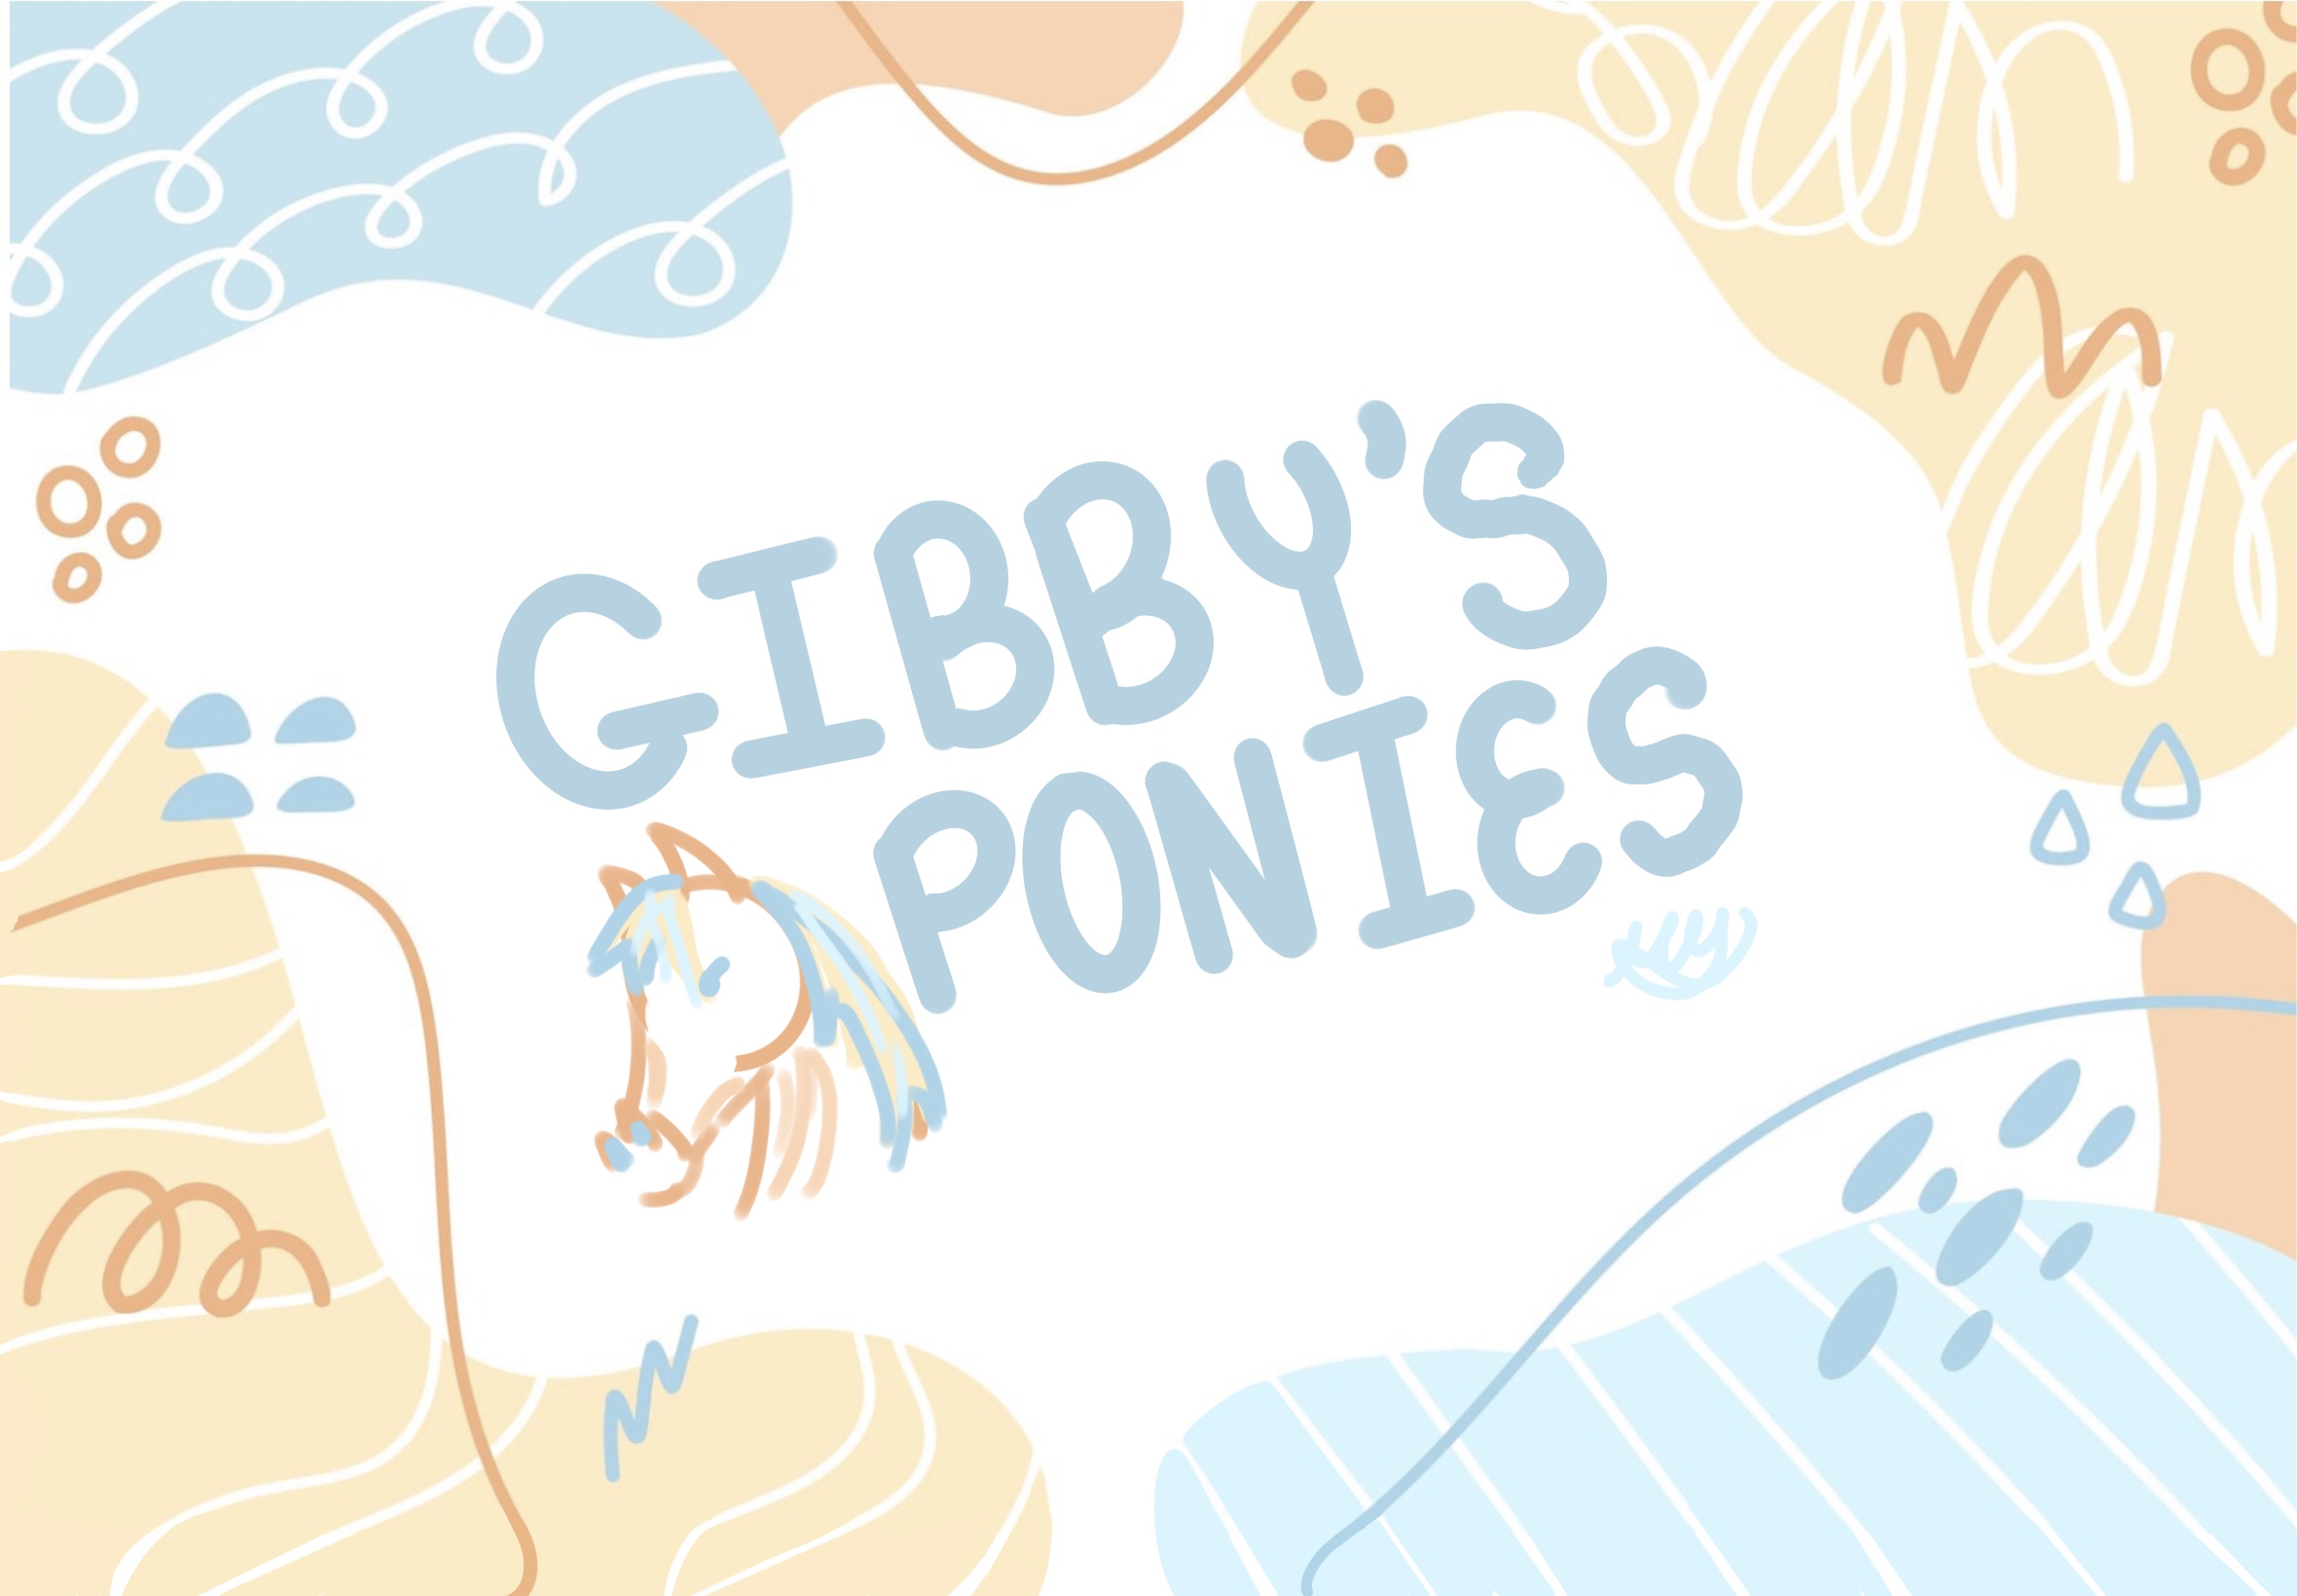 Gibbys Ponies